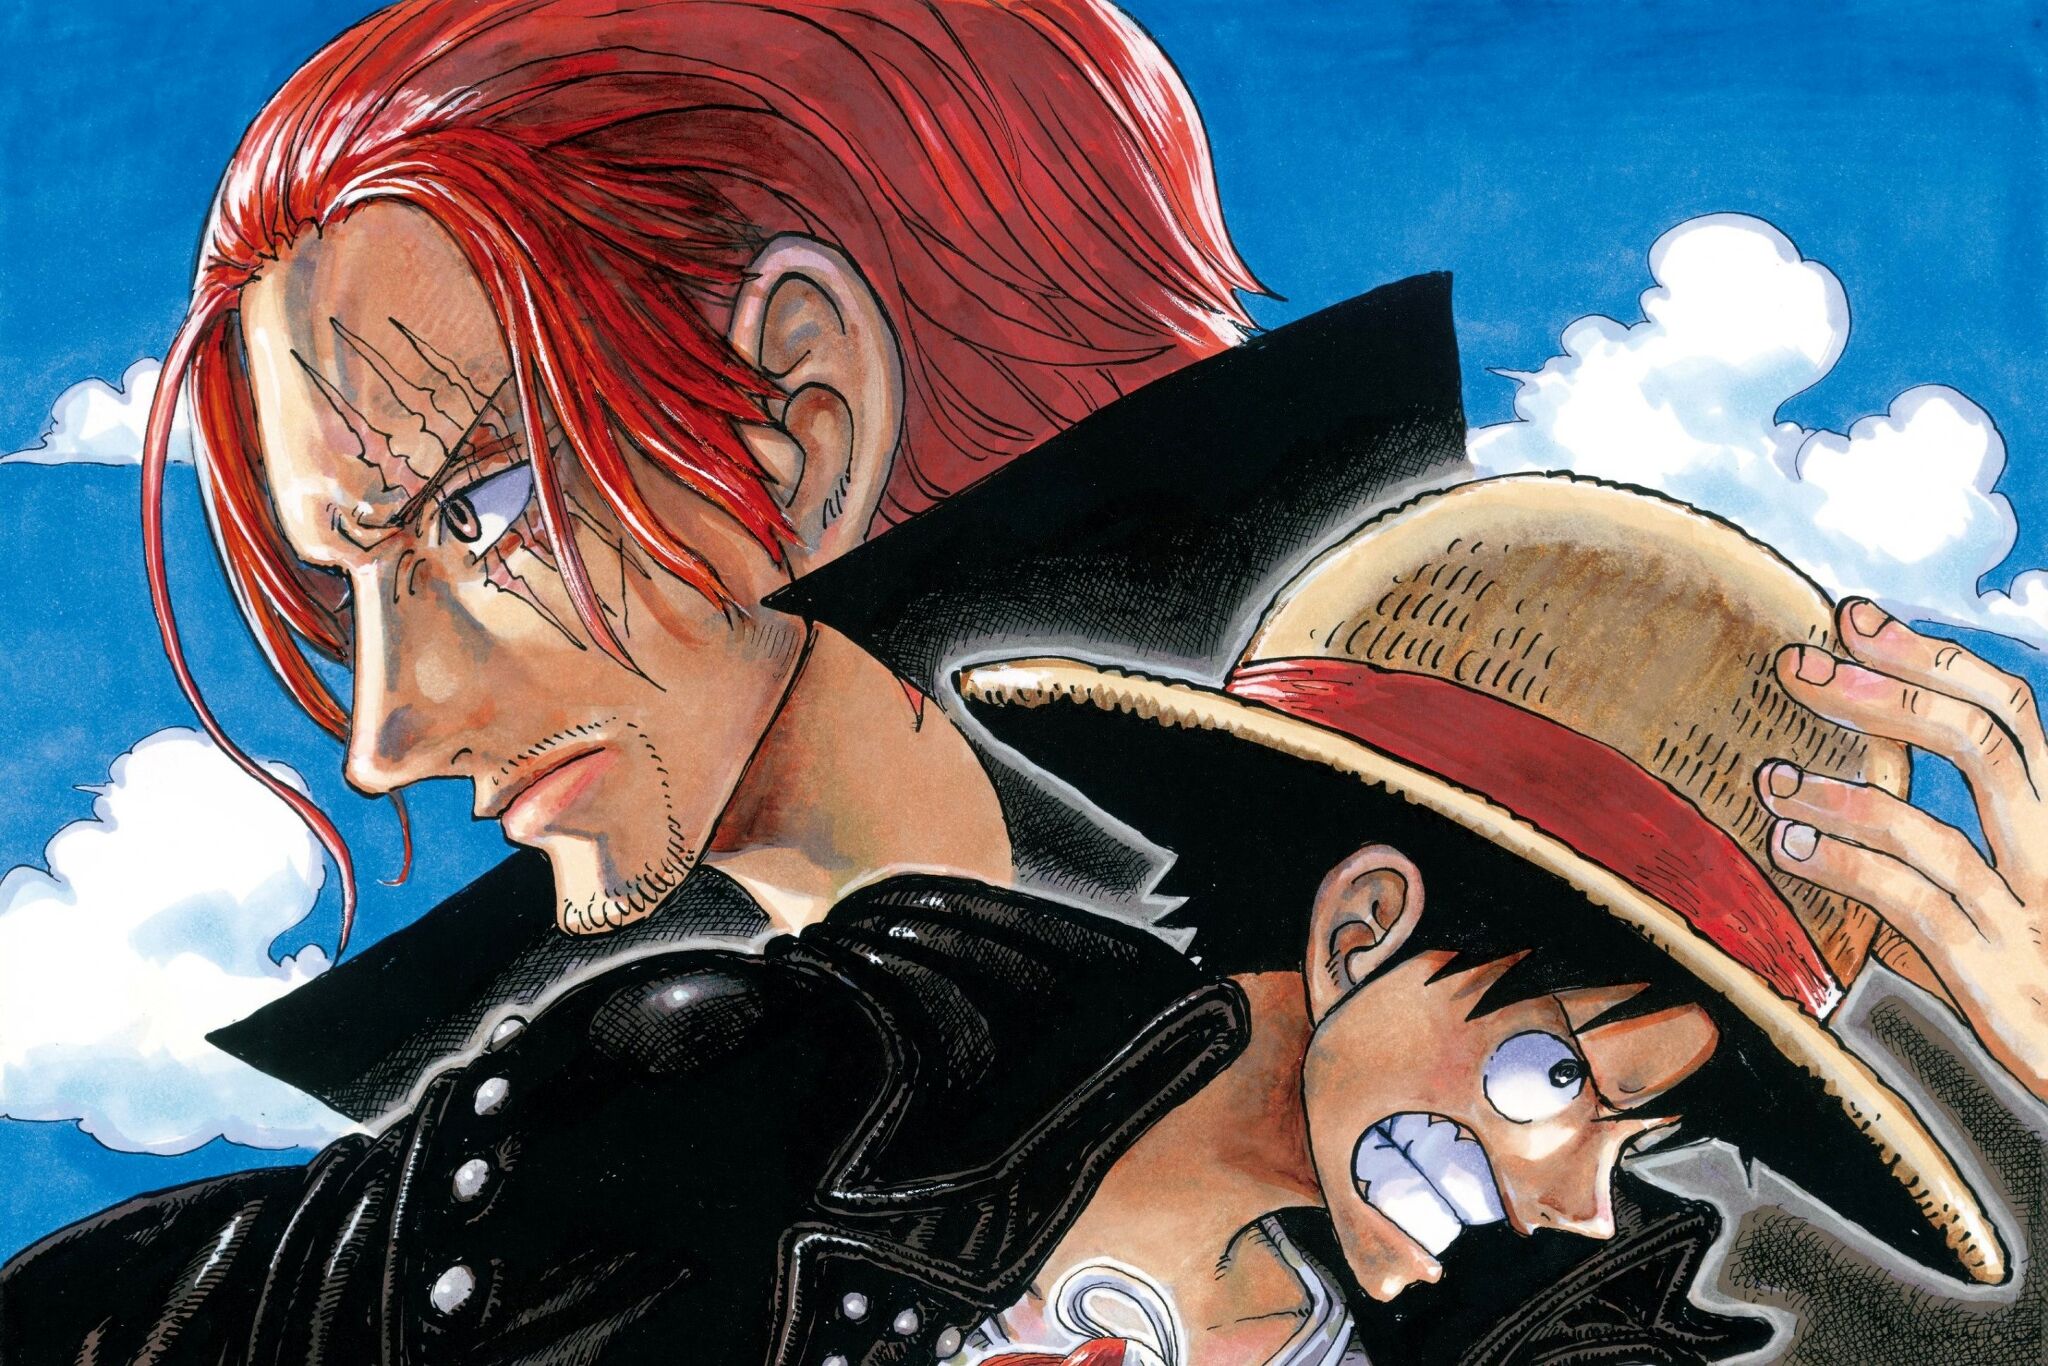 Toei Animation Reveals One Piece Episode 1000 Teaser Art - Crunchyroll News